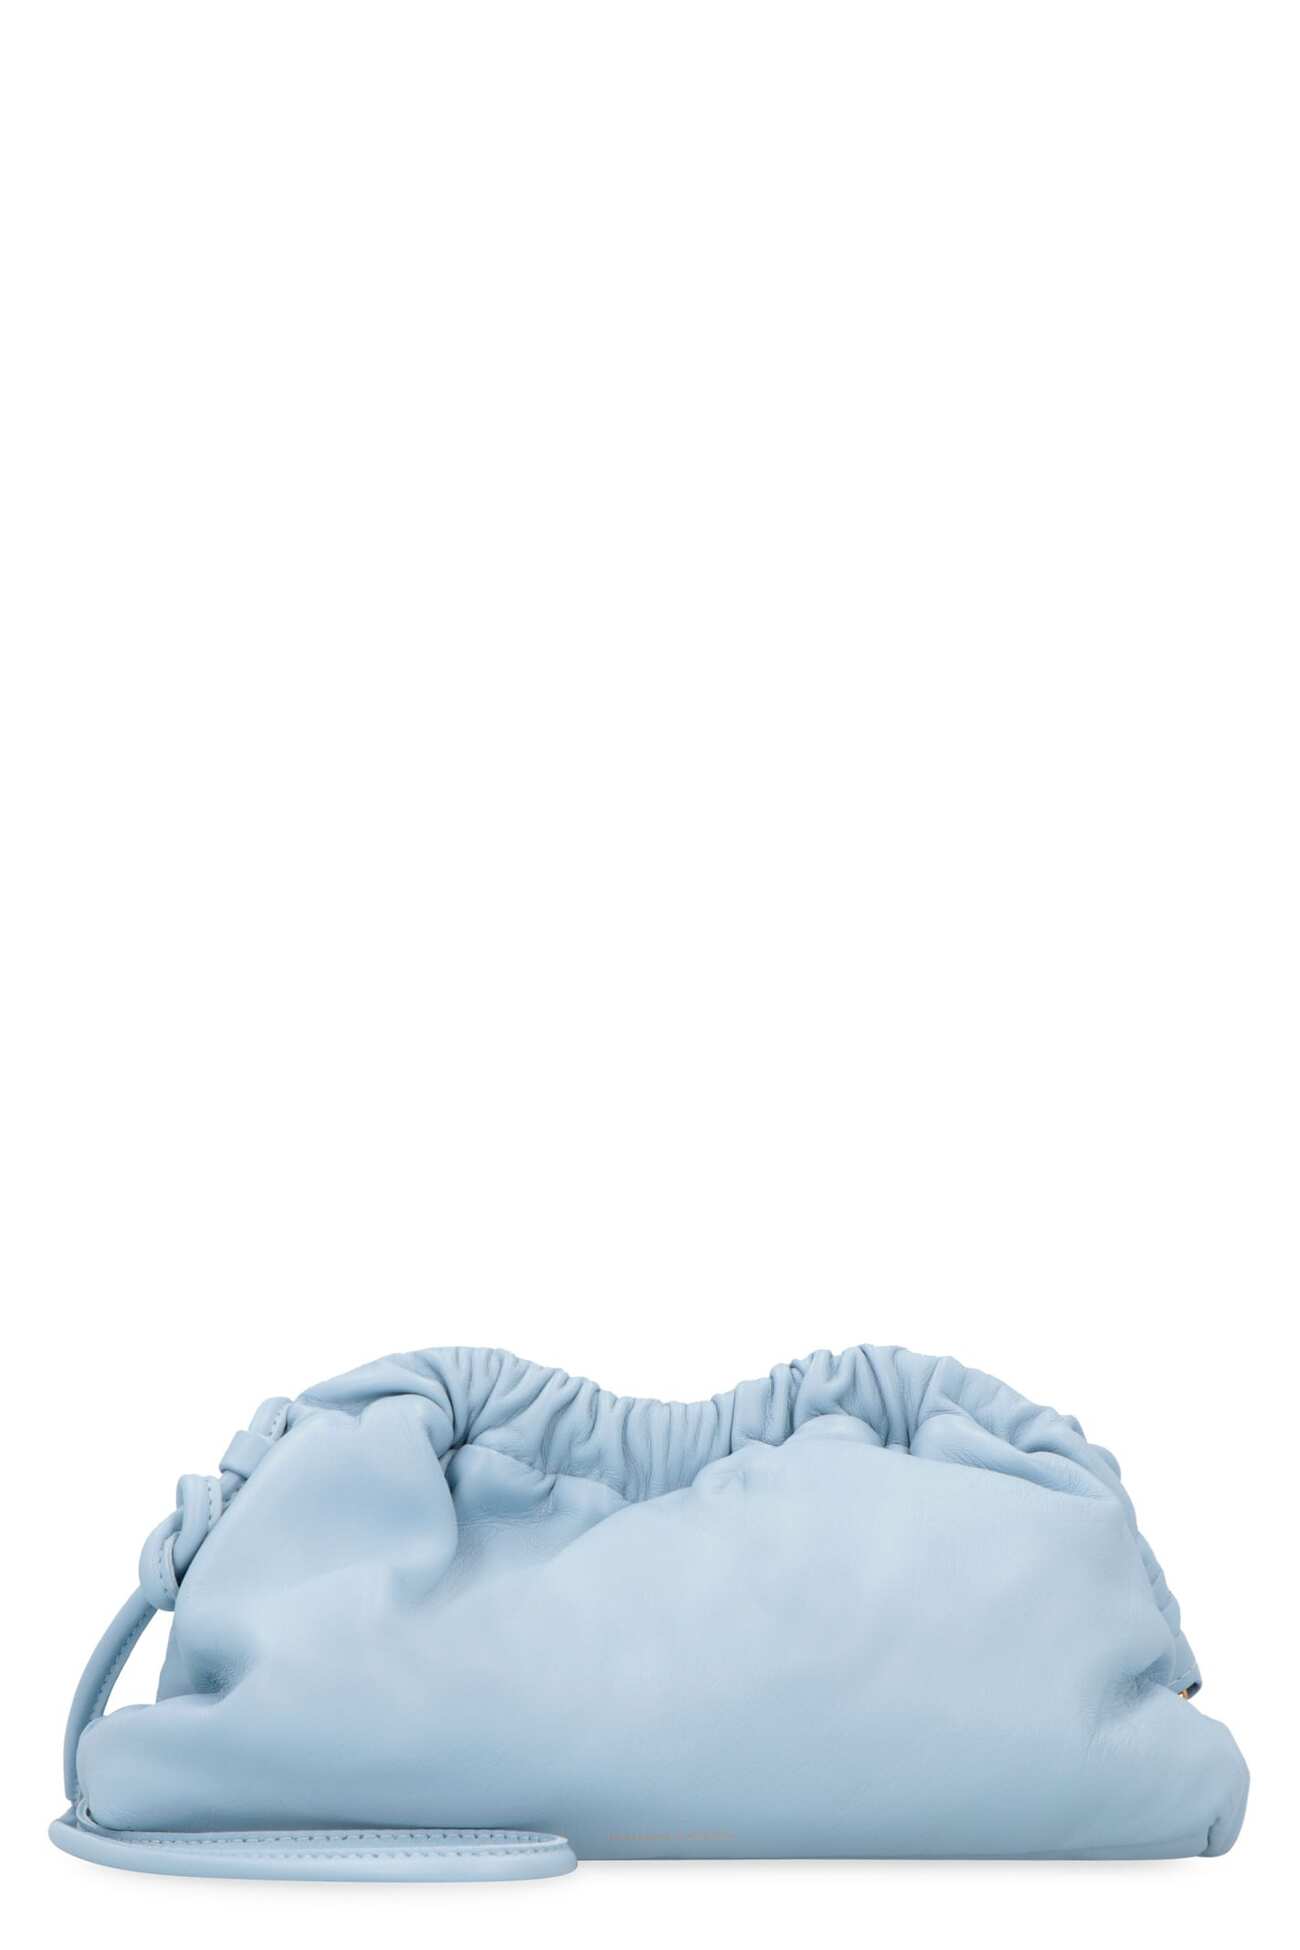 Mansur Gavriel Cloud Leather Clutch in blue